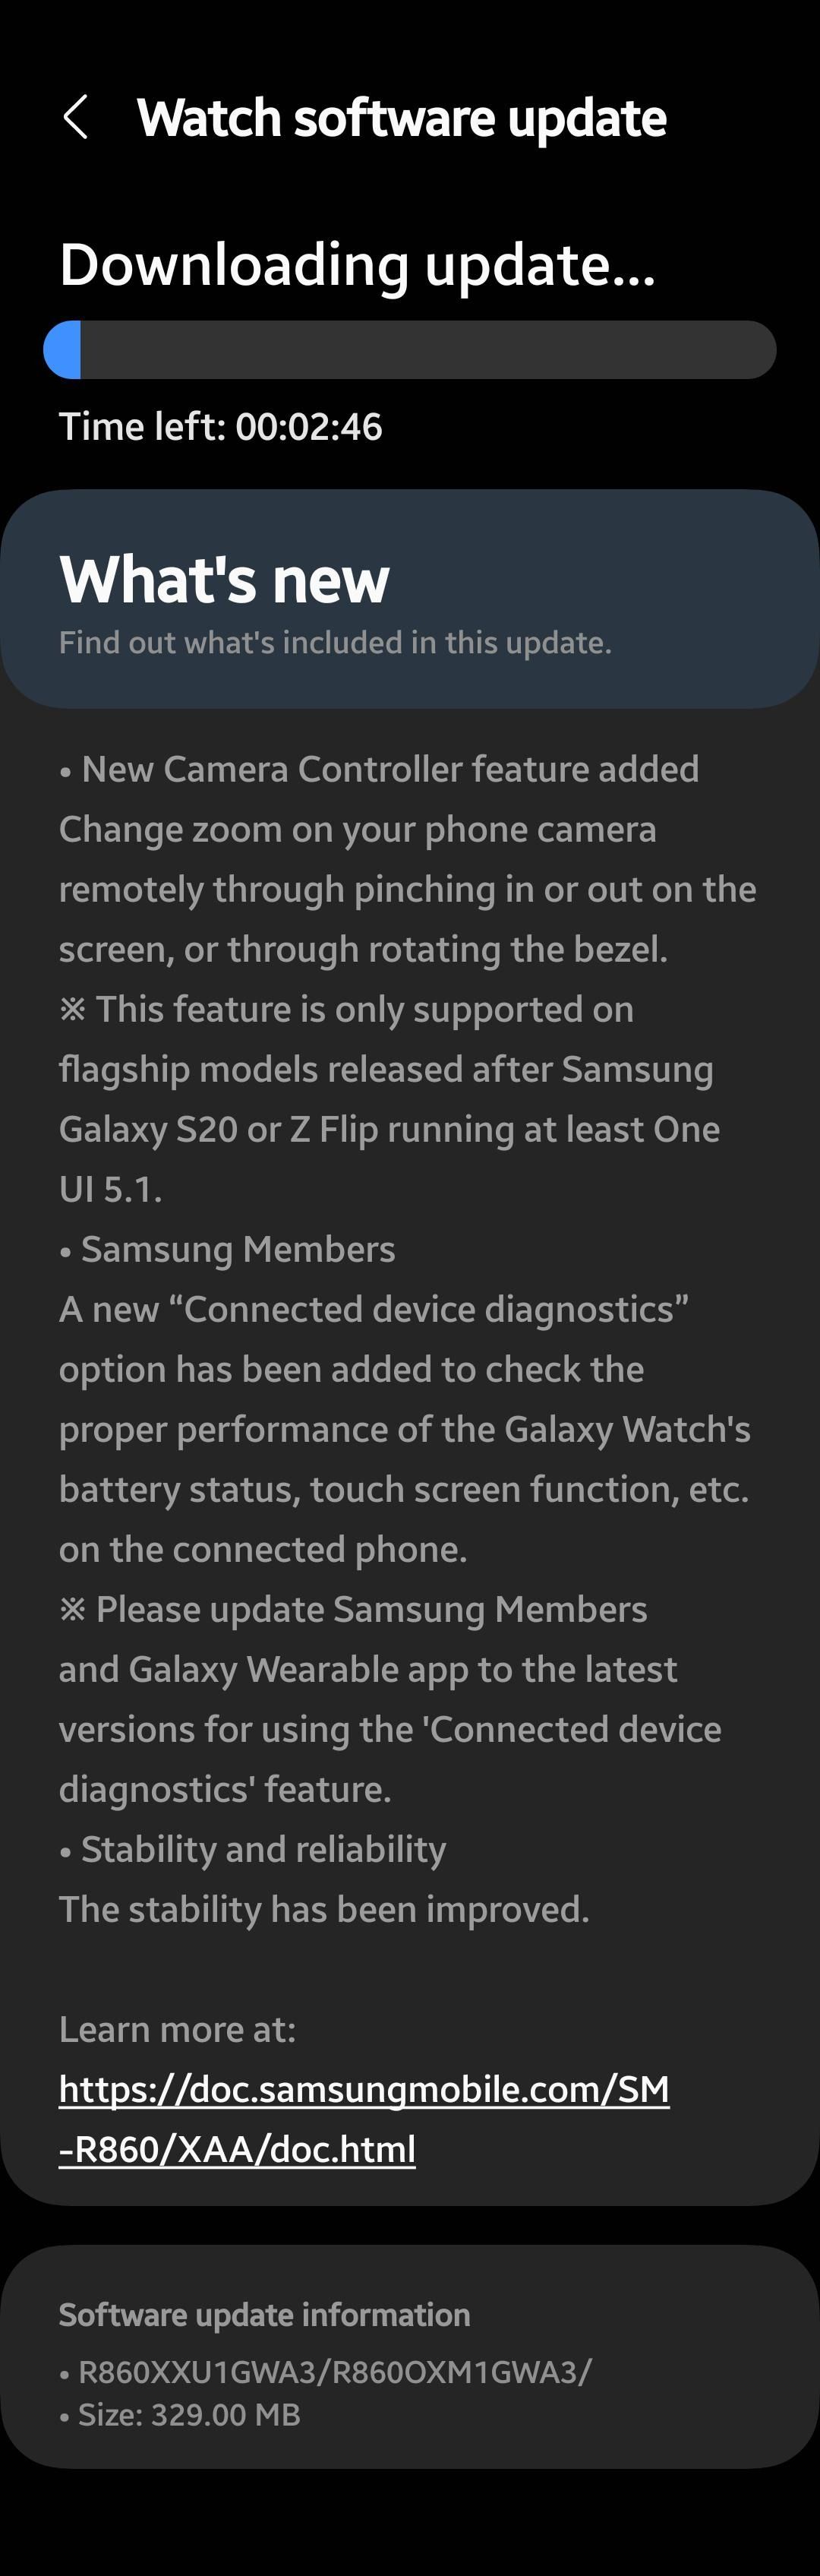 Screenshot of Samsung Galaxy Watch 4 software update.